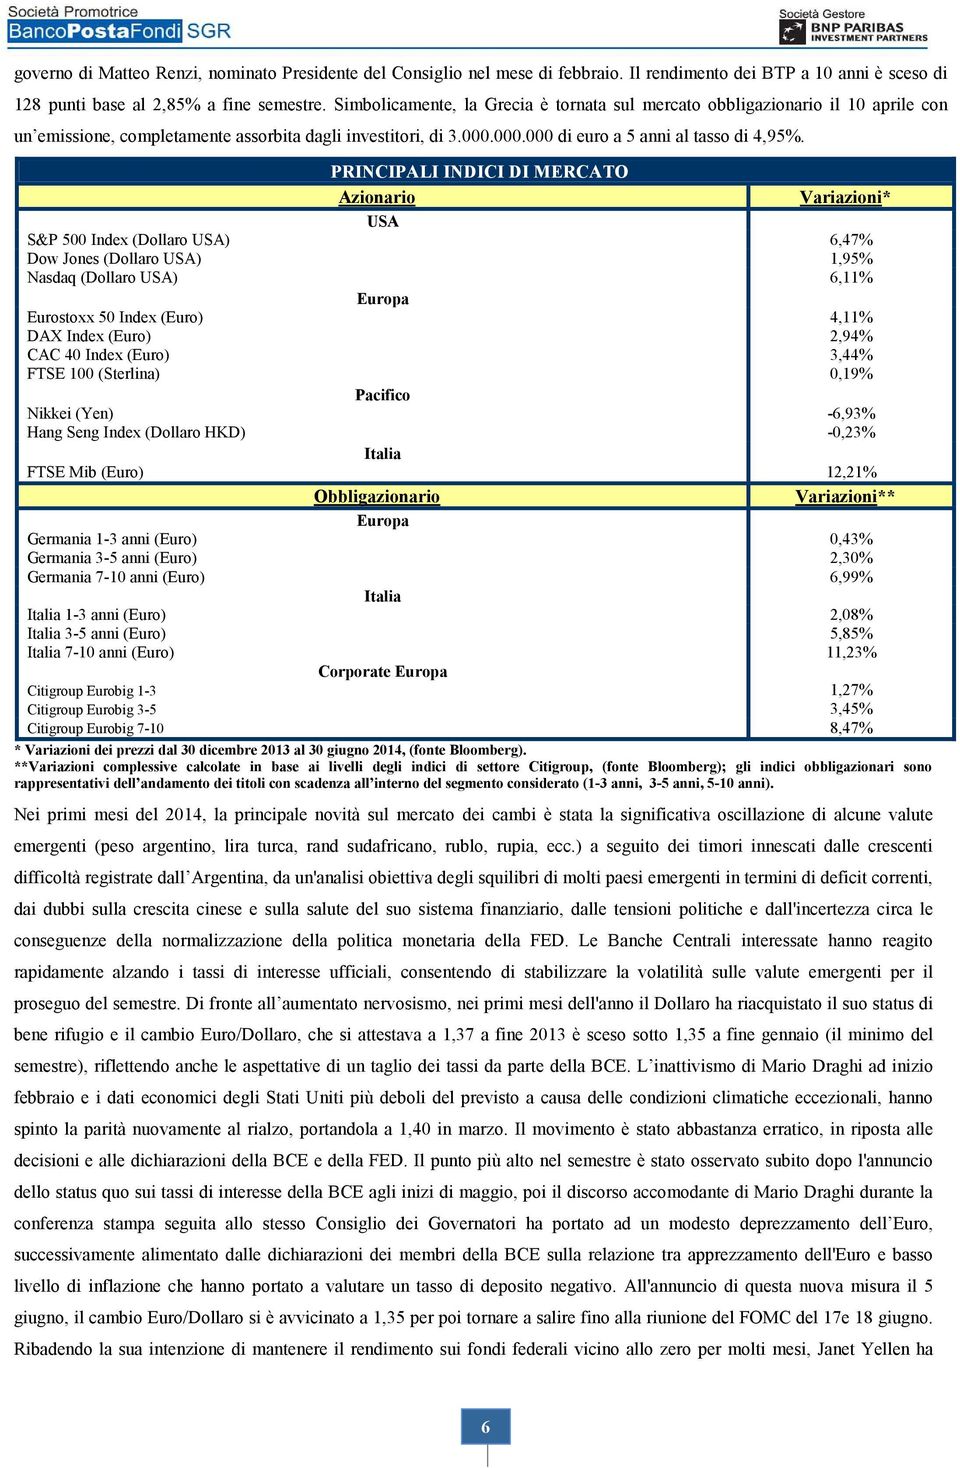 PRINCIPALI INDICI DI MERCATO Azionario Variazioni* USA S&P 500 Index (Dollaro USA) 6,47% Dow Jones (Dollaro USA) 1,95% Nasdaq (Dollaro USA) 6,11% Europa Eurostoxx 50 Index (Euro) 4,11% DAX Index